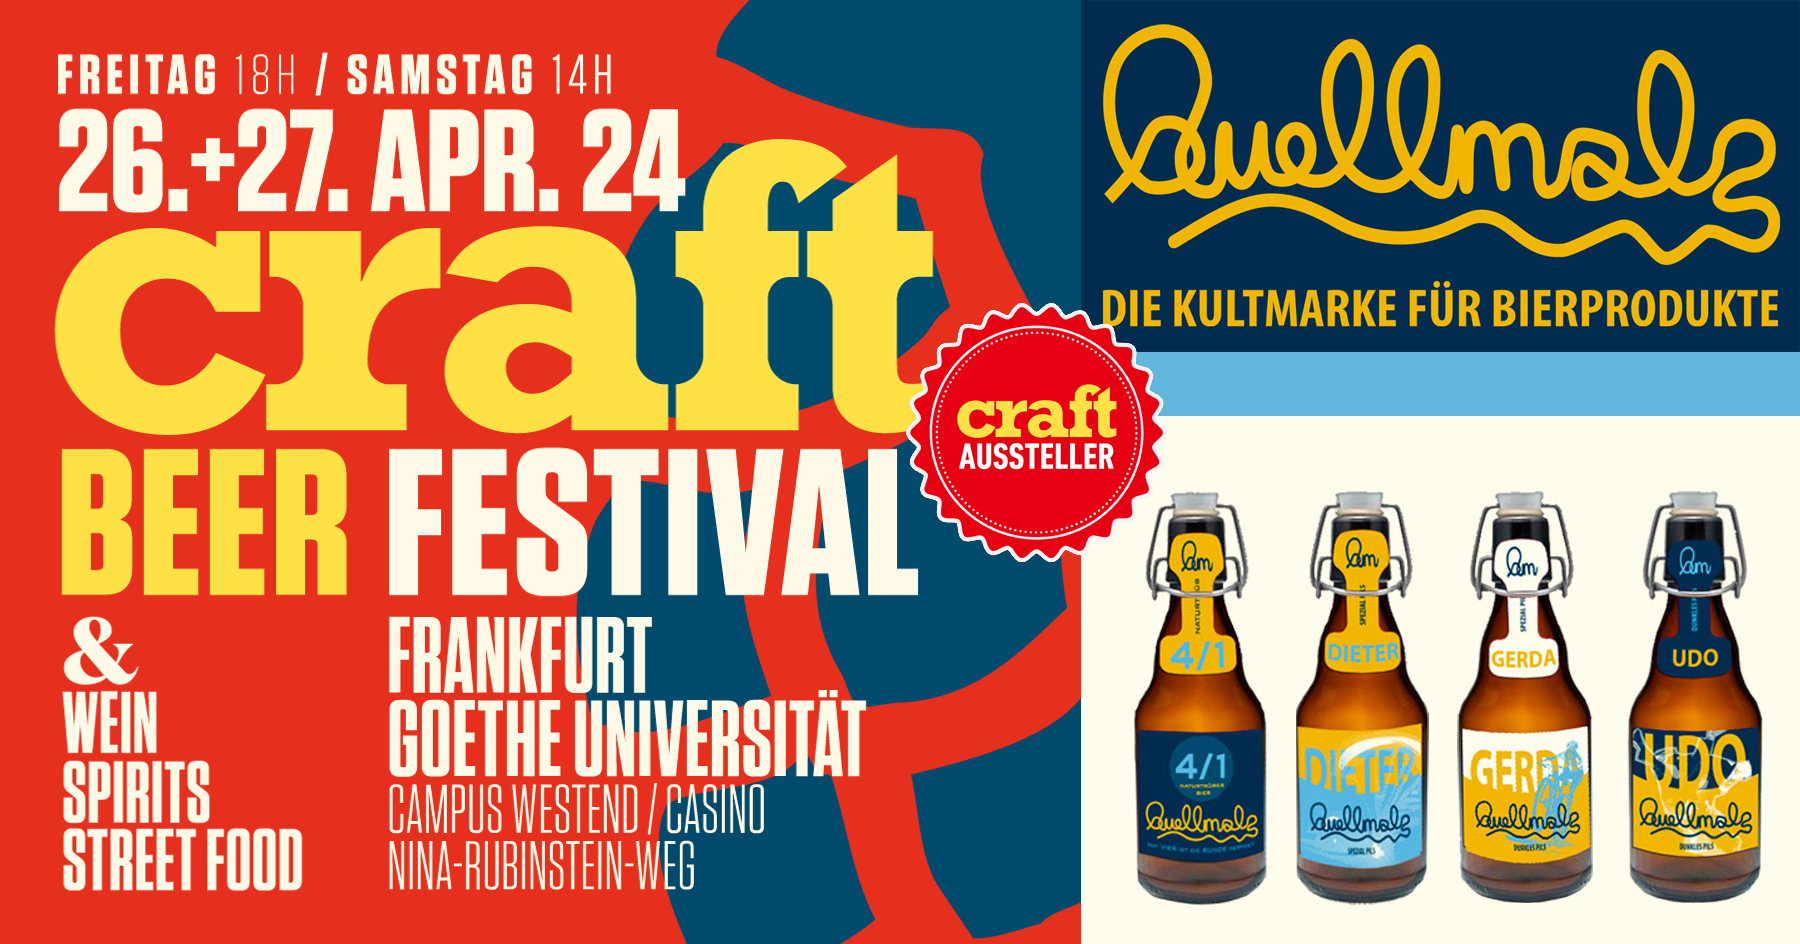 Quellmalz ist mit dem 4/1, DIETER, GERDA, UDO, STEVIE und ROBERT am Craft Beer Festival in Frankfurt